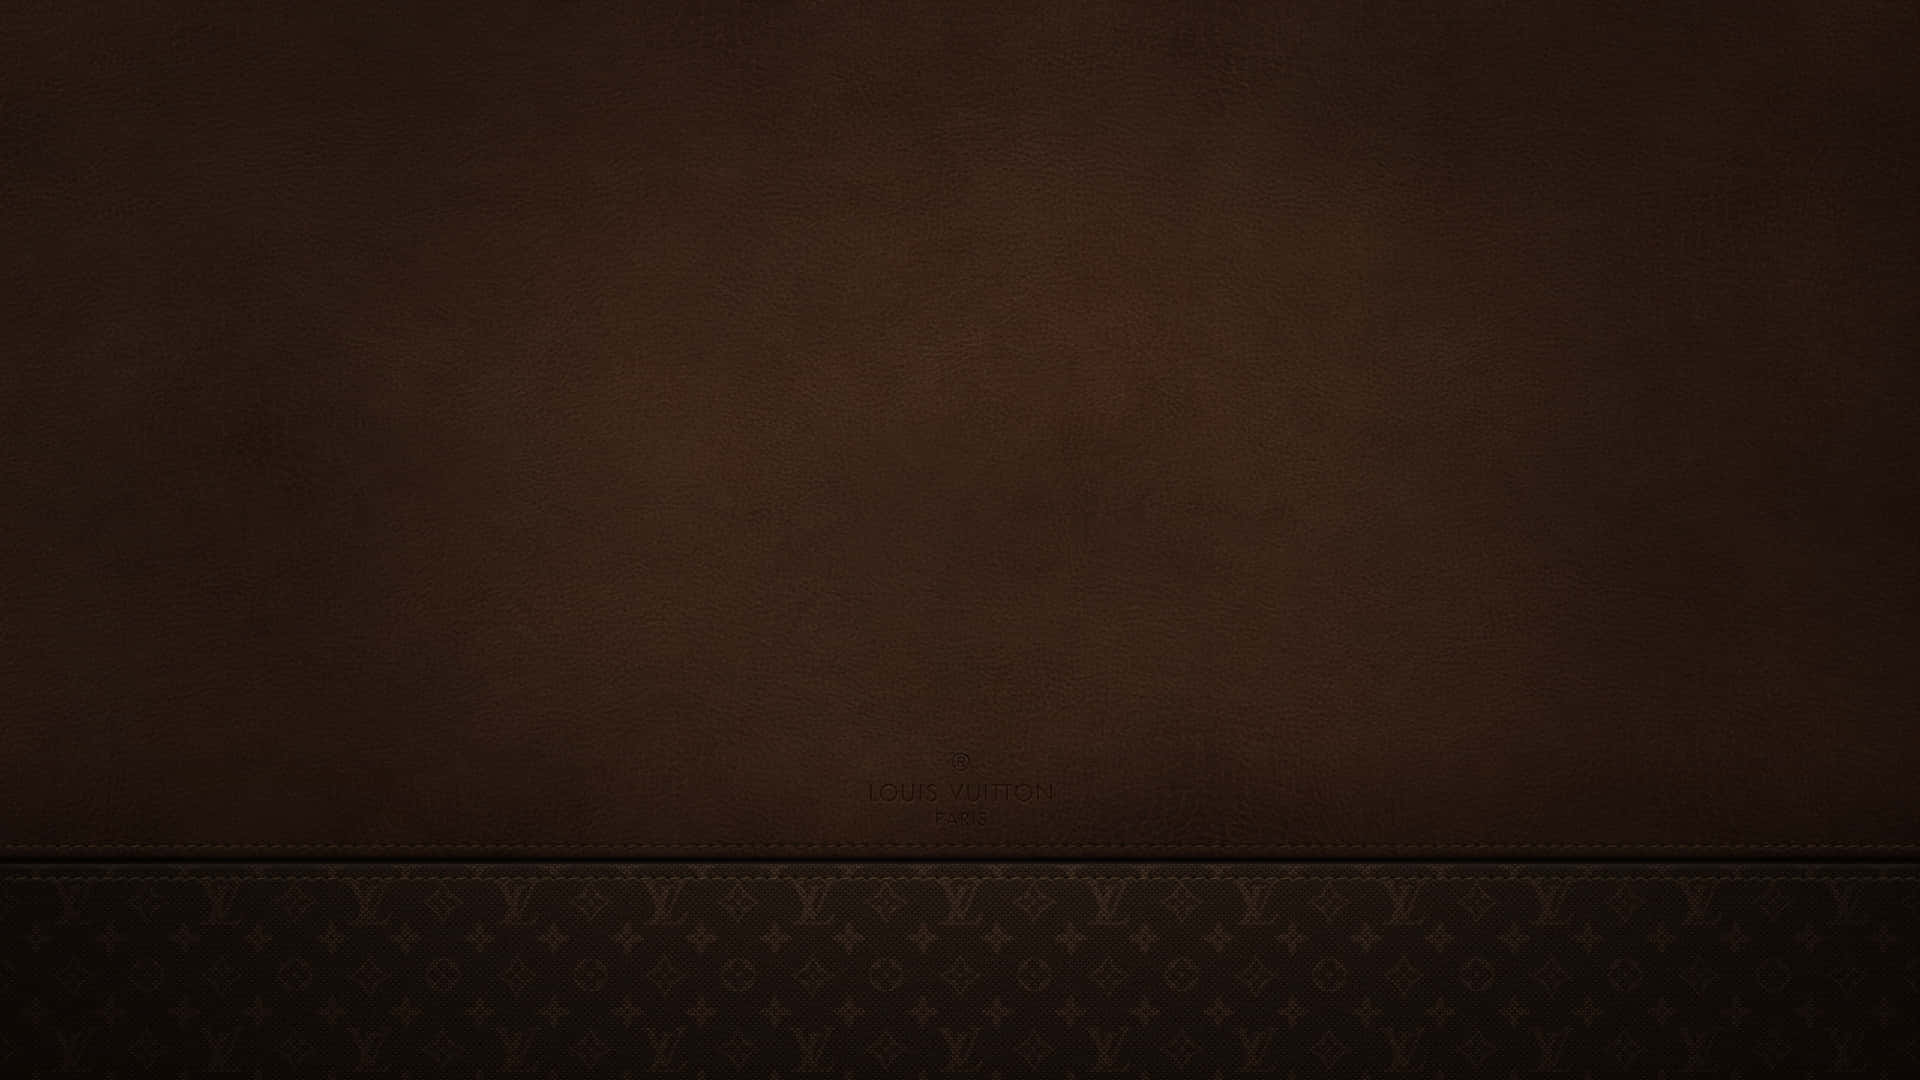 Disfrutadel Lujo De Louis Vuitton En Impresionante Resolución 4k. Fondo de pantalla